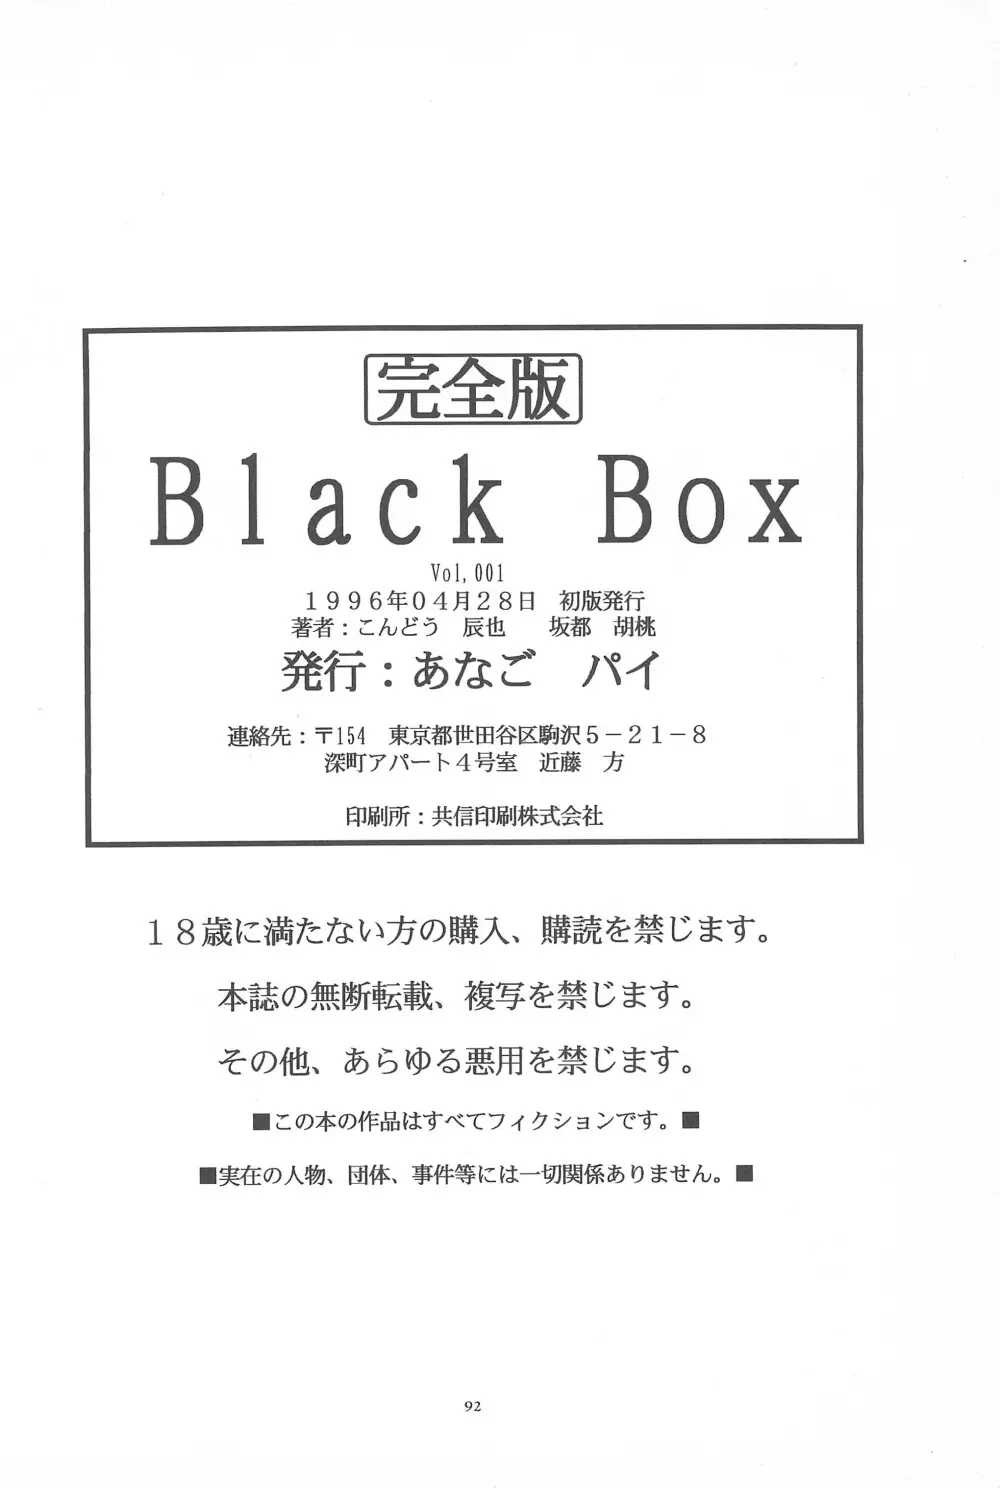 Black Box Vol.001 完全版 92ページ